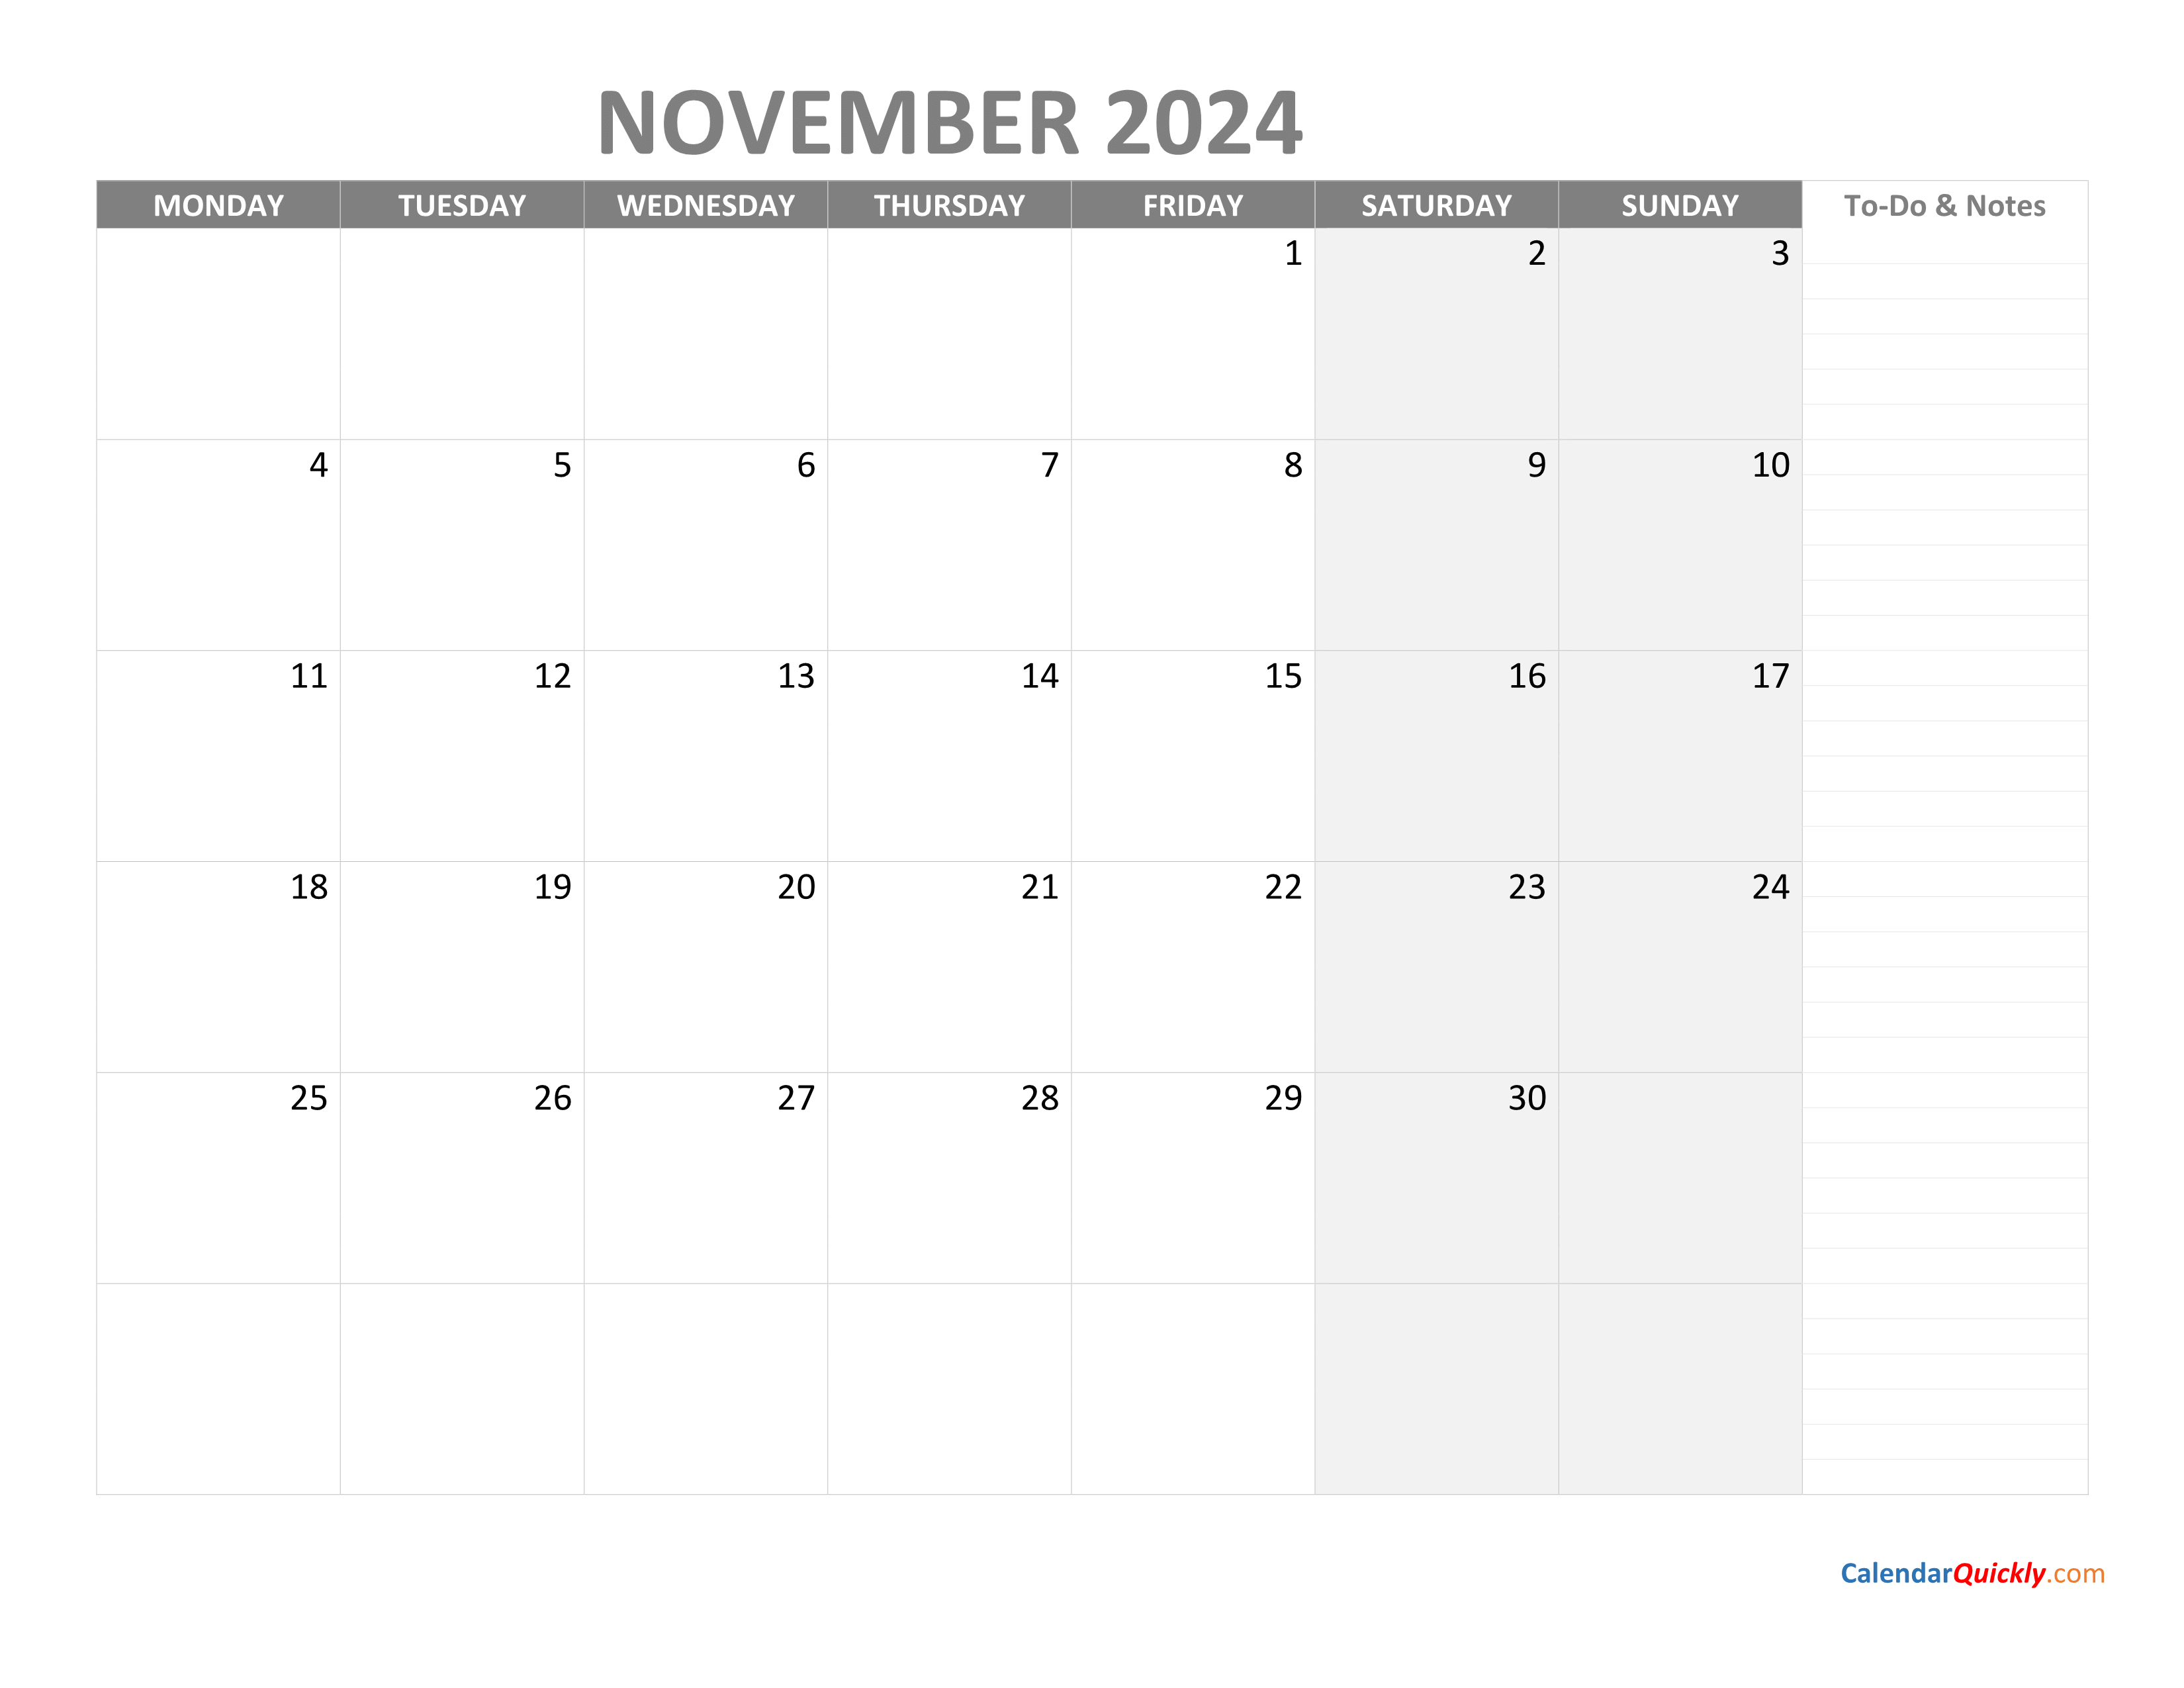 november-monday-calendar-2024-with-notes-calendar-quickly